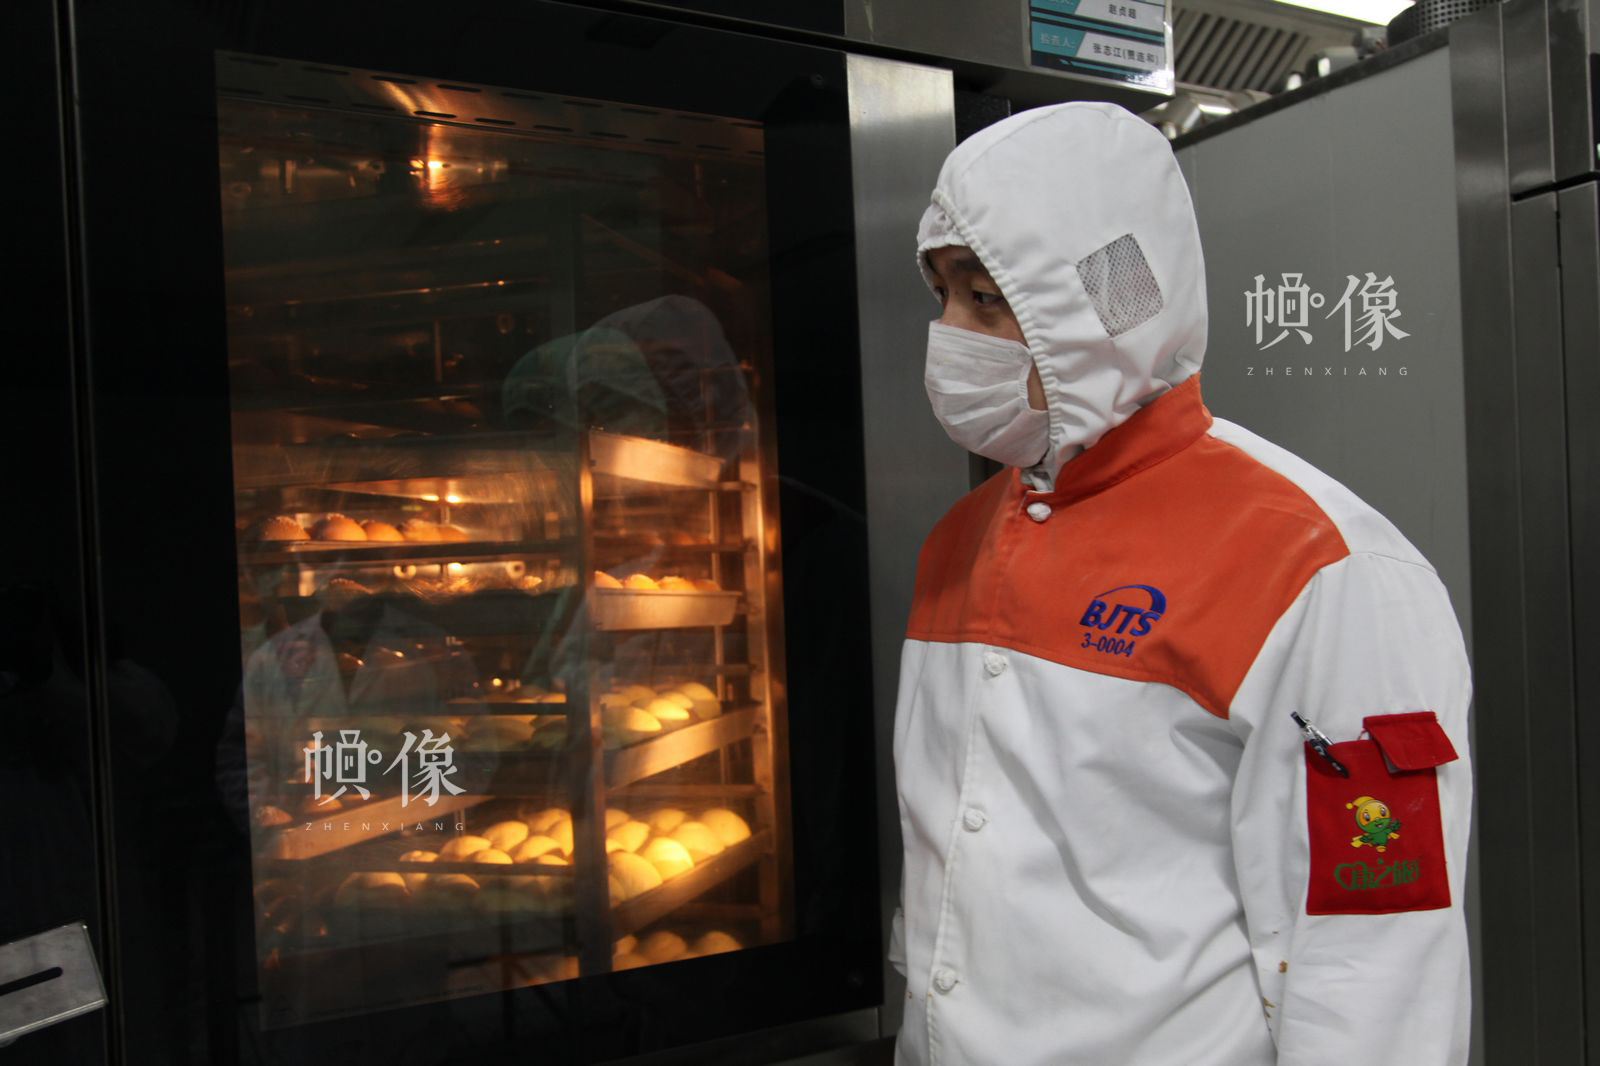 工人正在用烤箱制作面包等点心食品。中国网记者 陈维松 摄